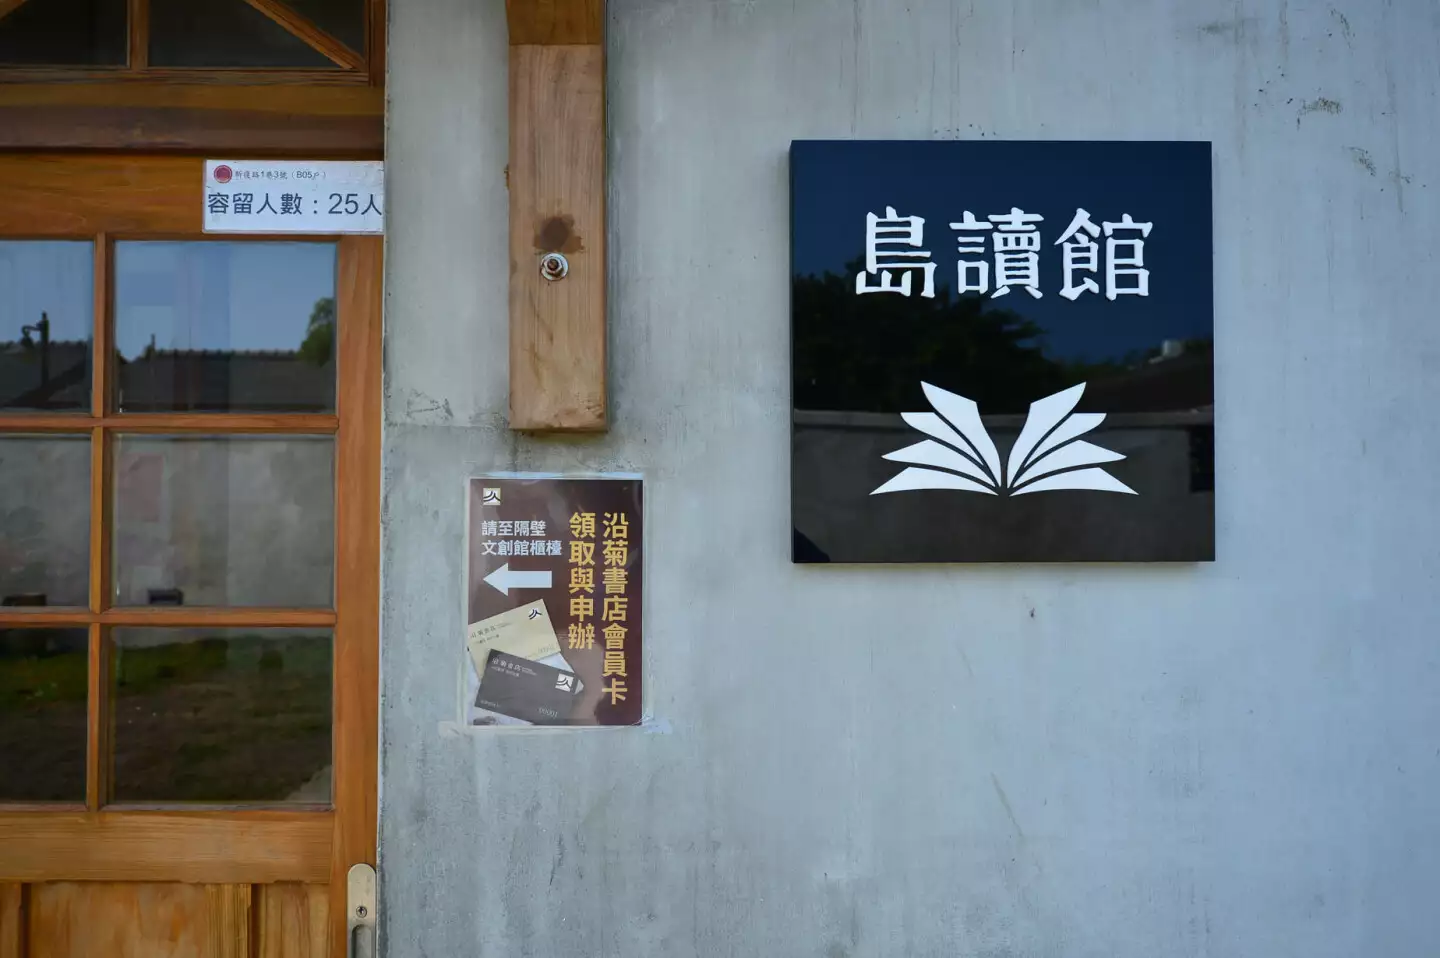 沿菊書店對創辦人高世澤和澎湖居民來說，不僅是一間獨立書店，也是一個文化交流的場域。圖片來源：沿菊書店臉書粉專。